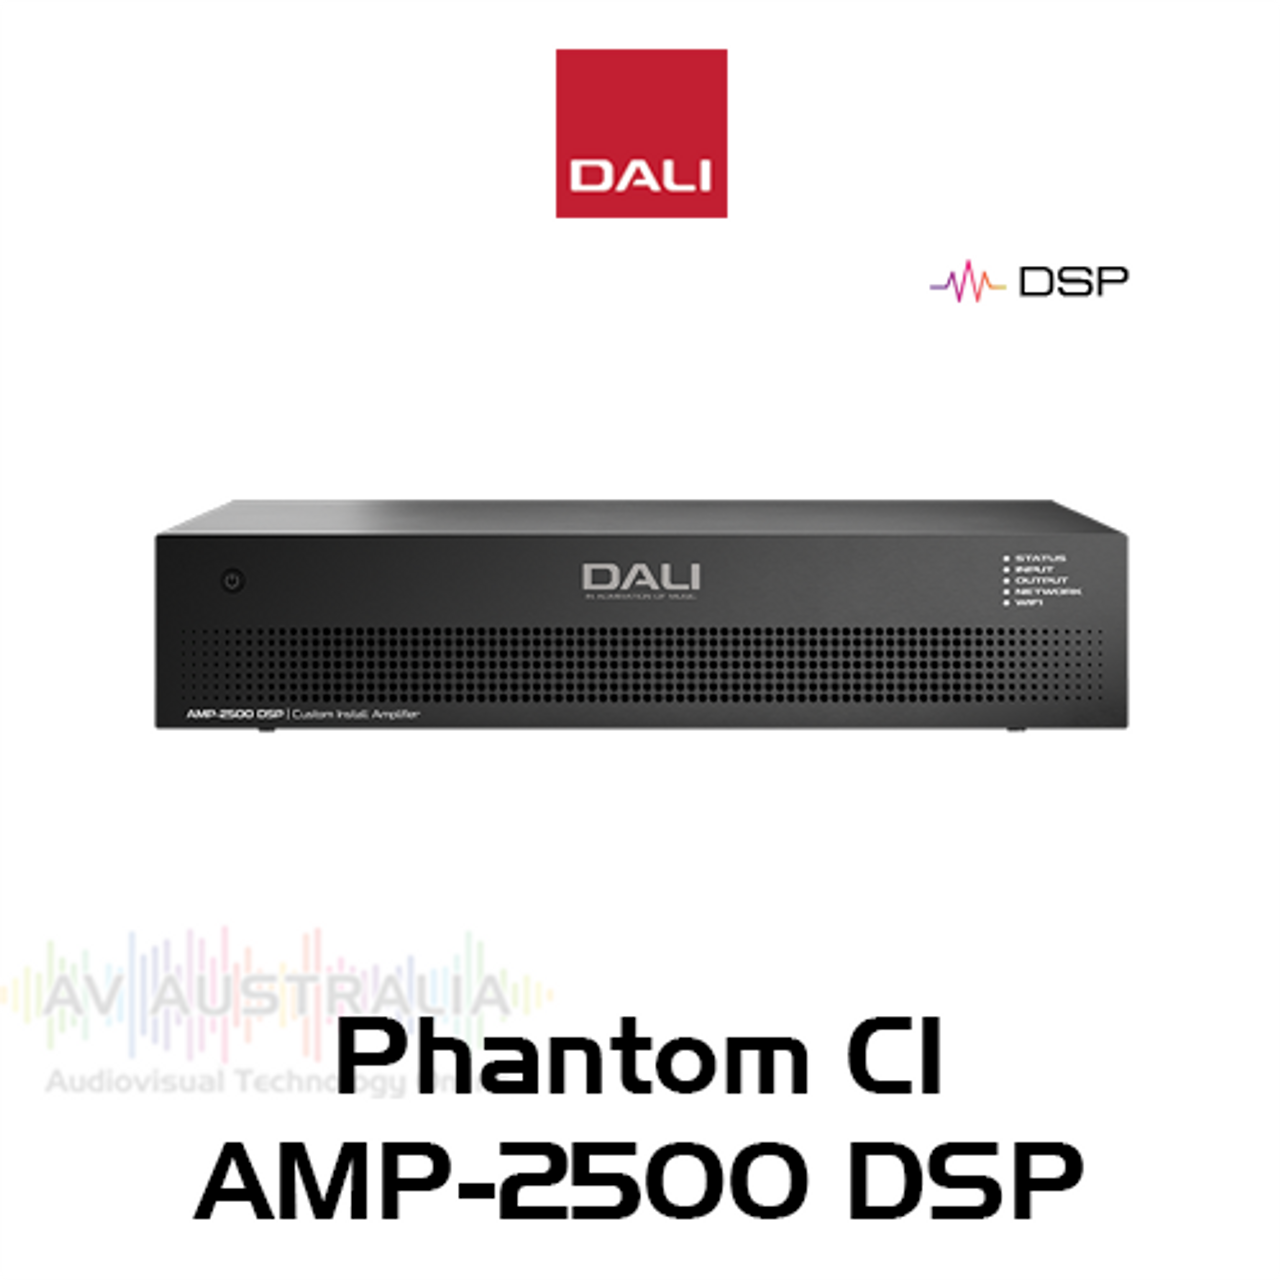 Dali Phantom CI AM-2500-DSP 2x 500W Class-D Subwoofer Amplifier